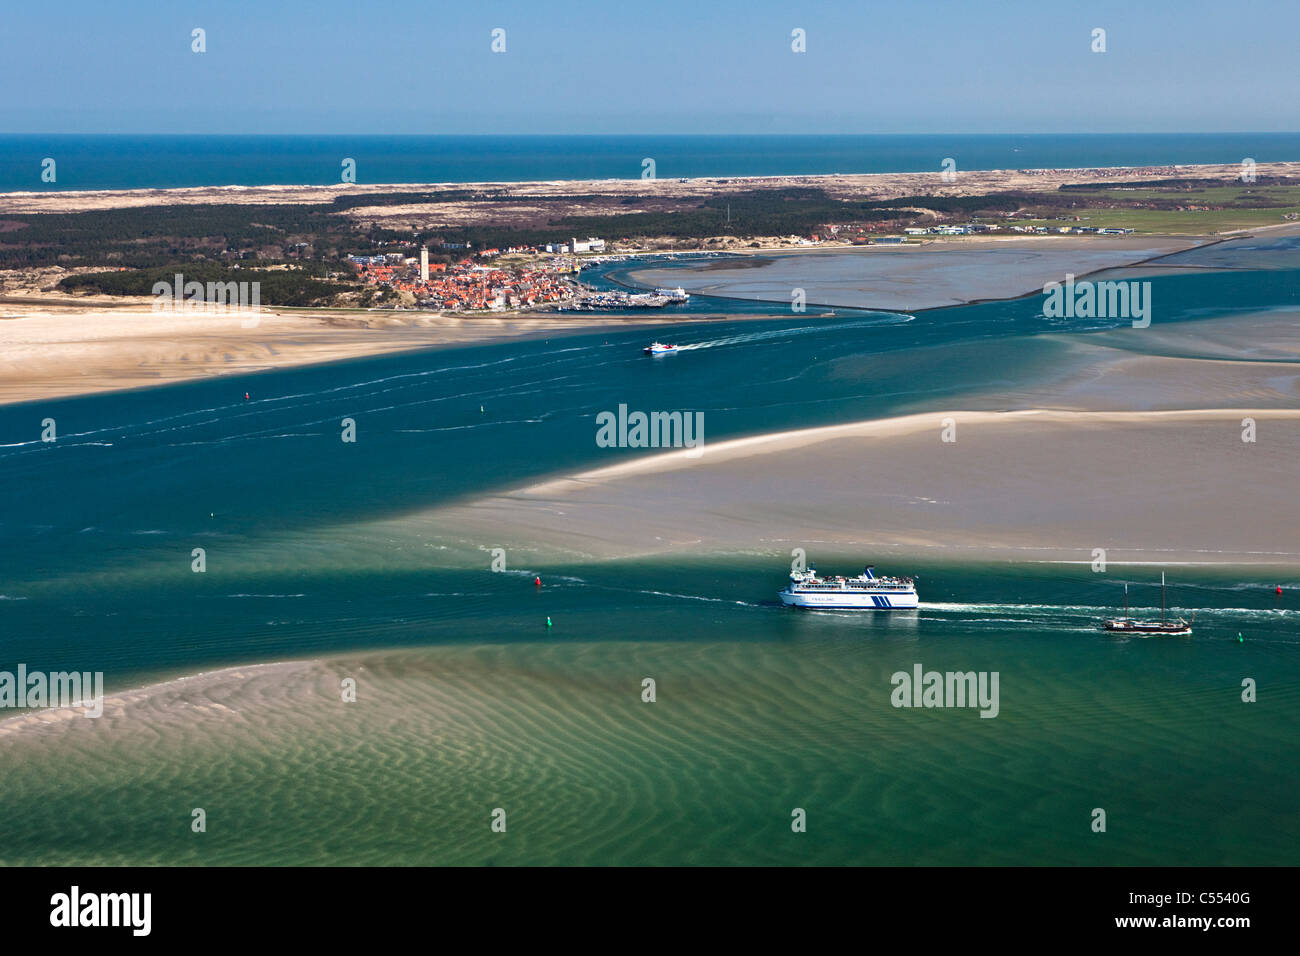 Holland, Isola di Terschelling, il Wadden Sea. Unesco - Sito Patrimonio dell'umanità. La bassa marea. Traghetto, villaggio Terschelling West. Antenna. Foto Stock